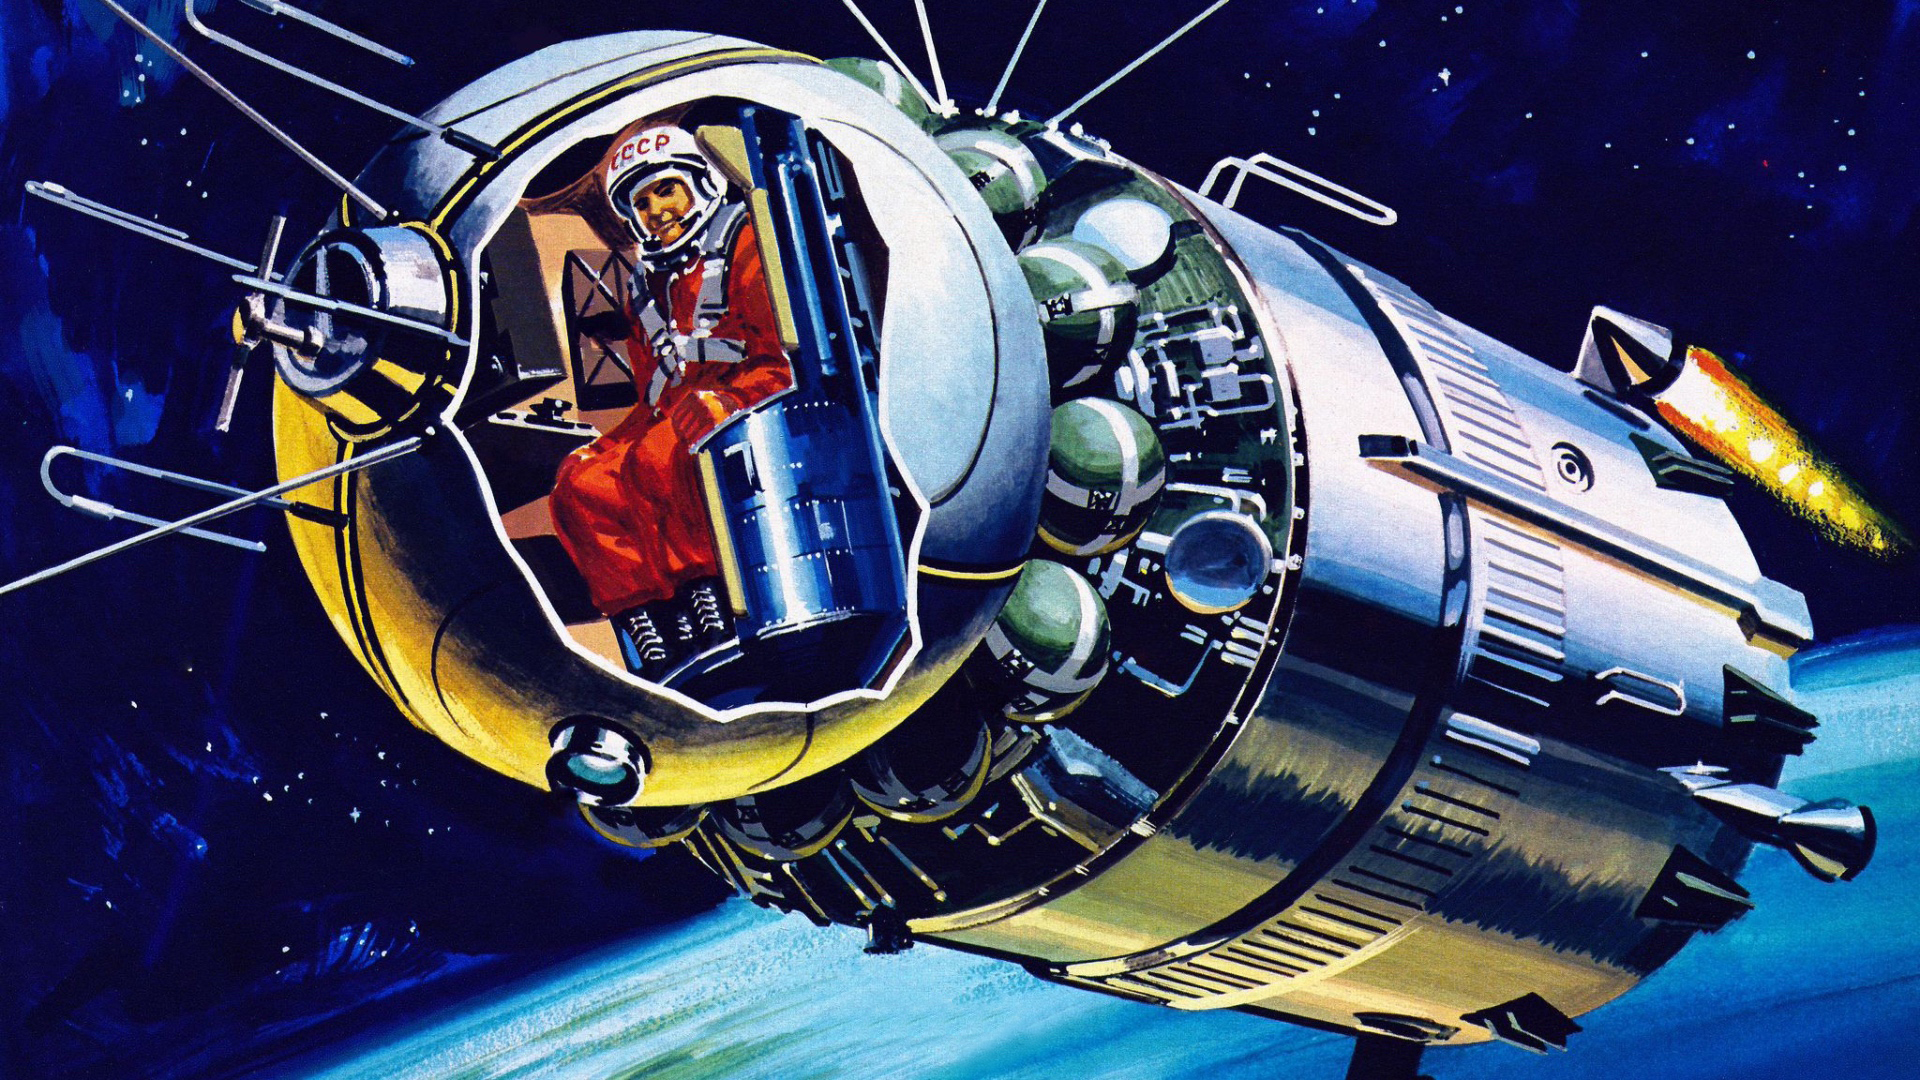 Назови первый космический корабль. Космический корабль Восток Юрия Гагарина. Первый космический корабль Гагарина Восток 1. Космический корабль Восток Юрия Гагарина 1961. Космический аппарат Гагарина Восток-1.